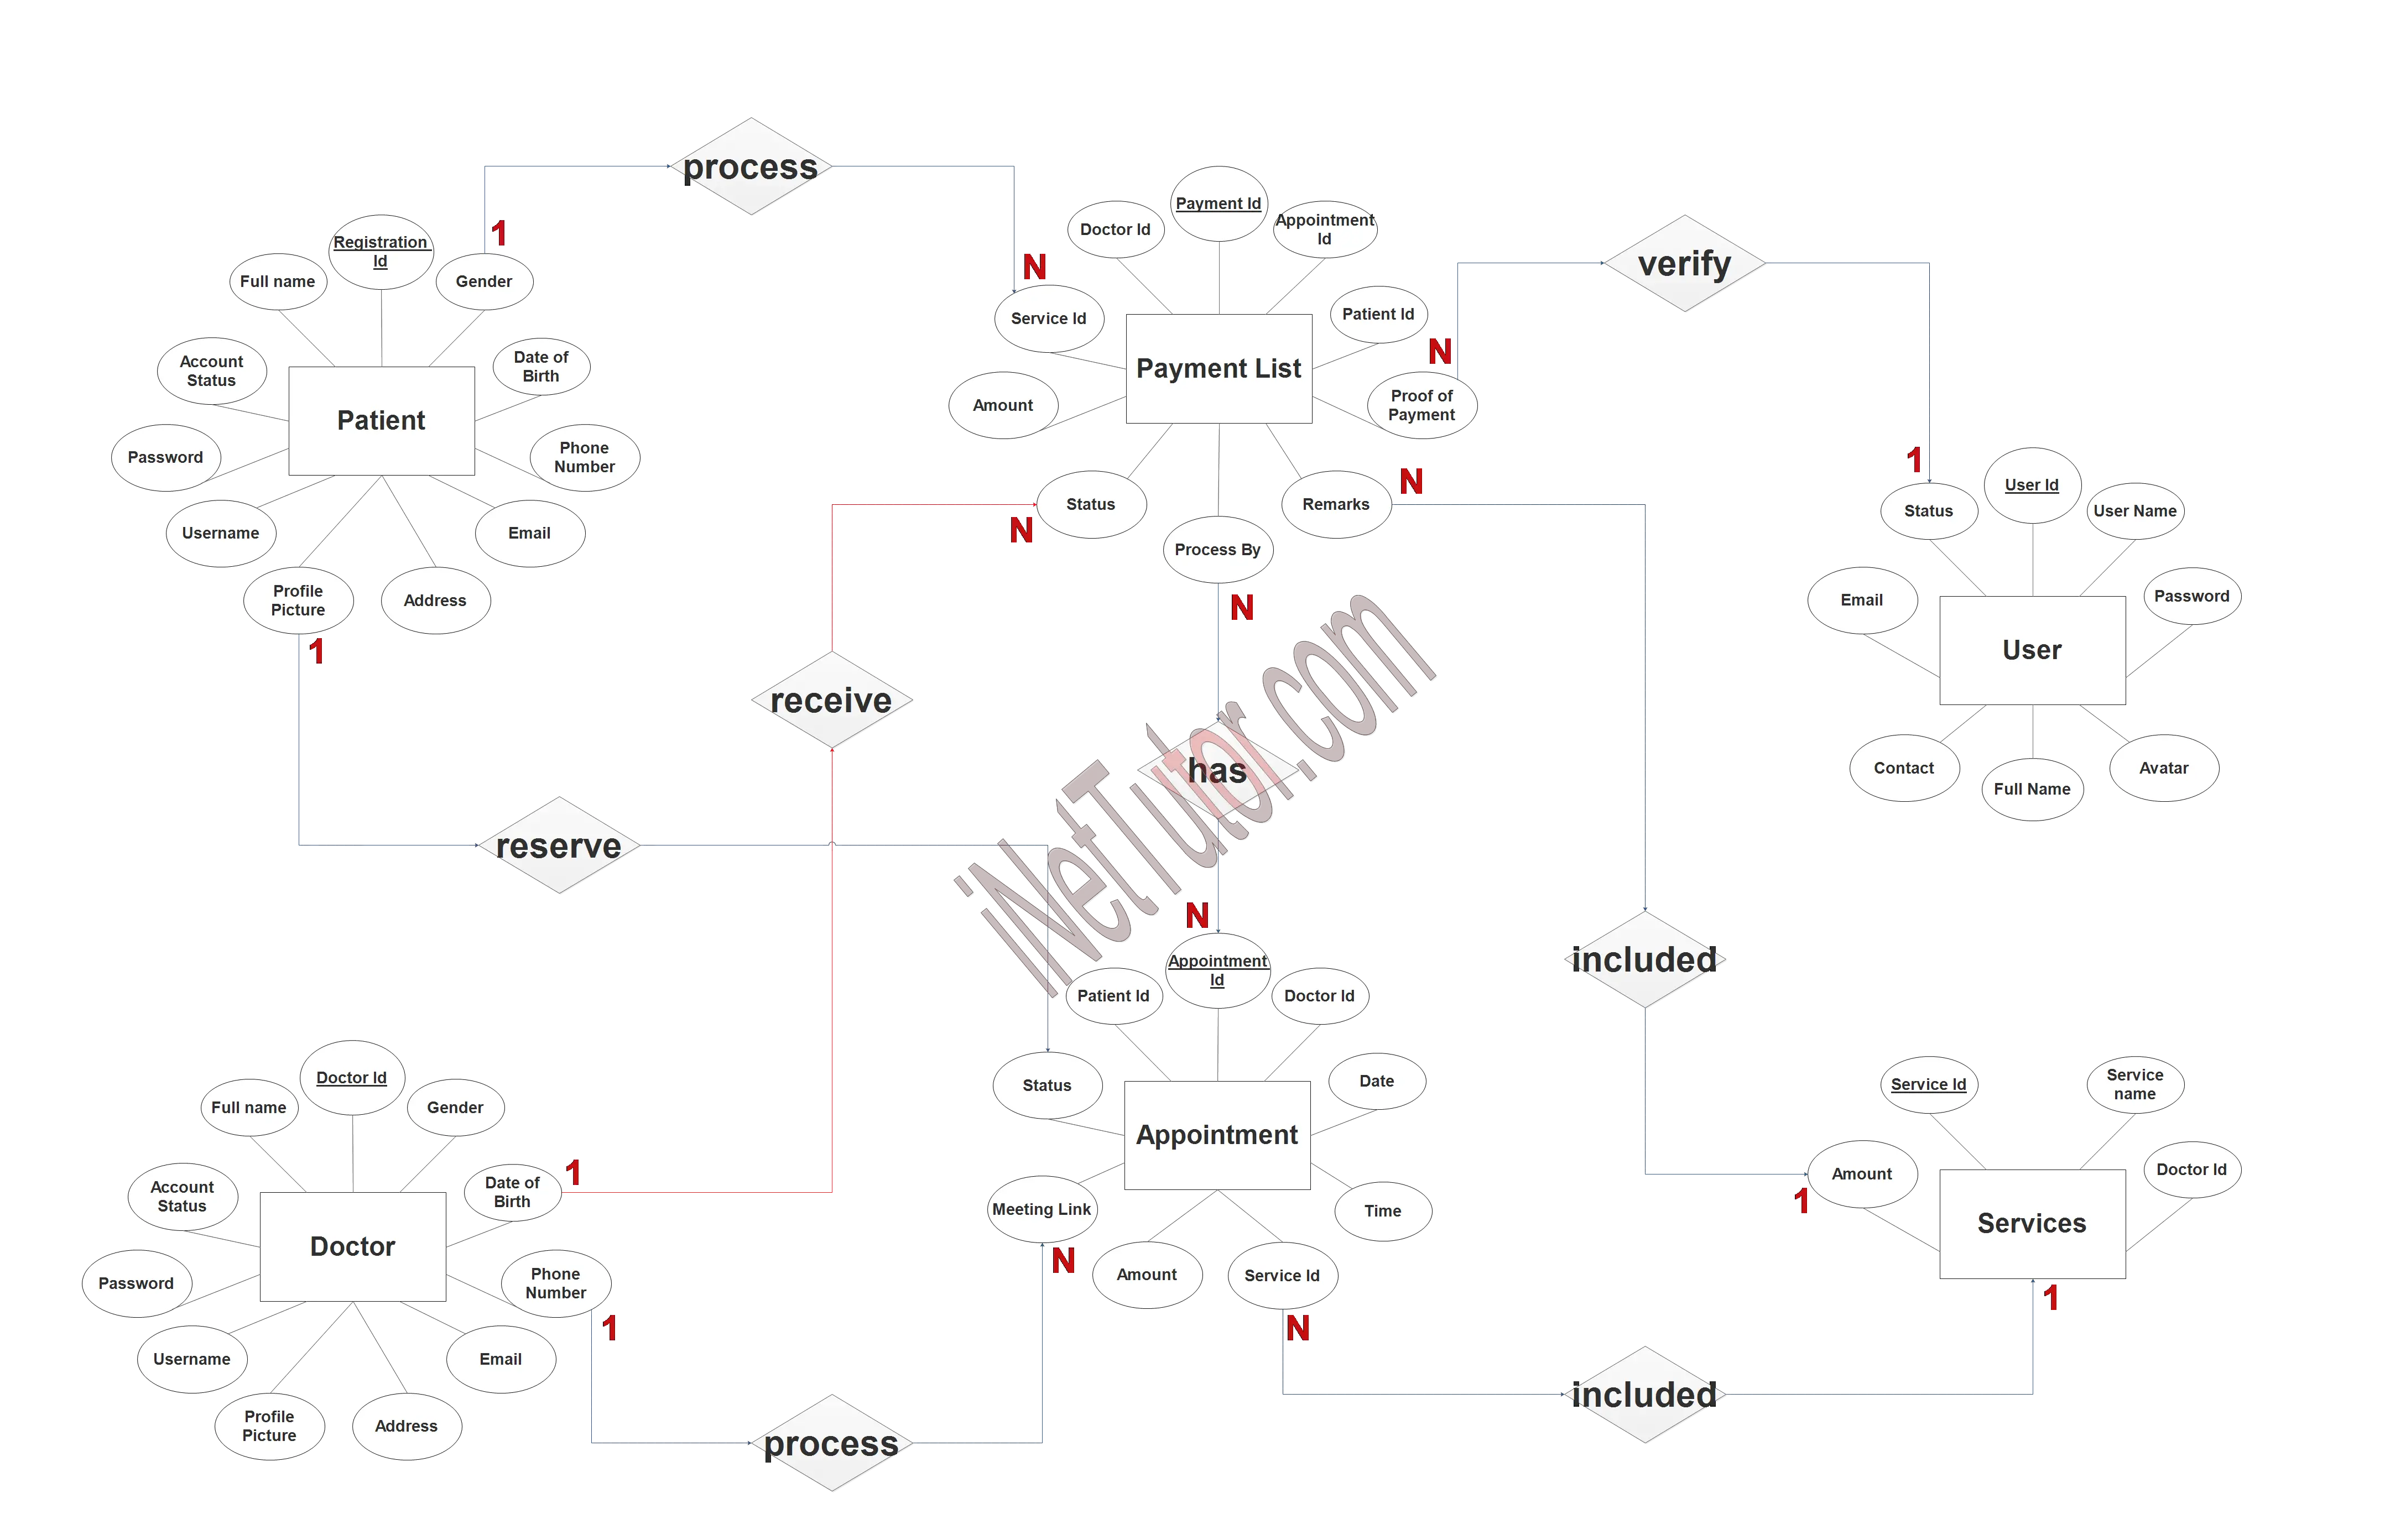 Tele Medicine Information System ER Diagram - Step 3 Complete ERD